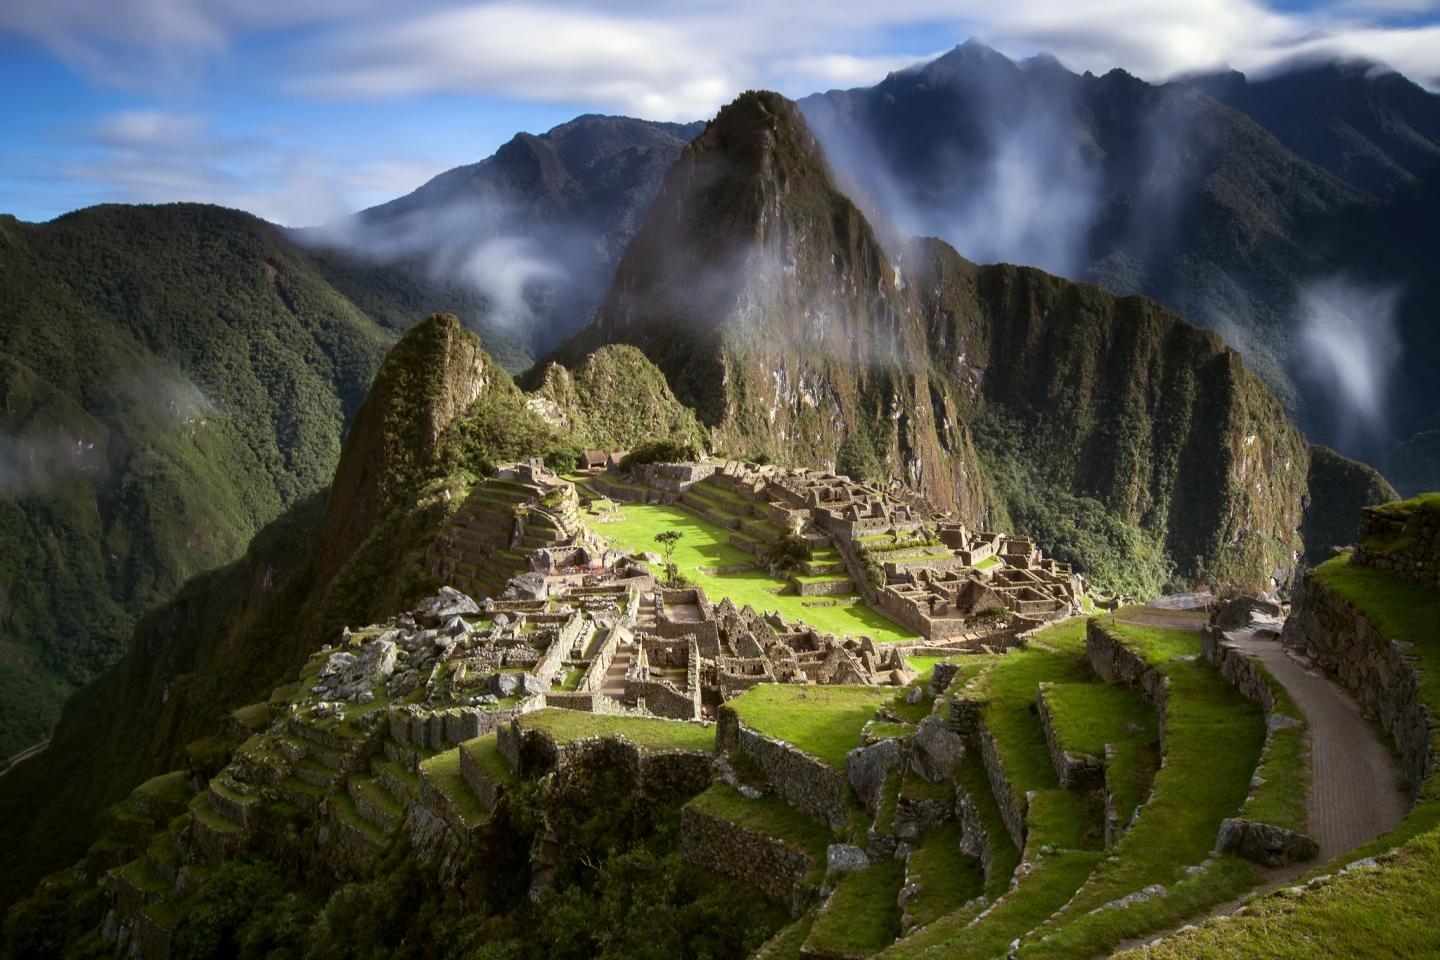 Download HD 1440x960 Machu Picchu desktop wallpaper for free